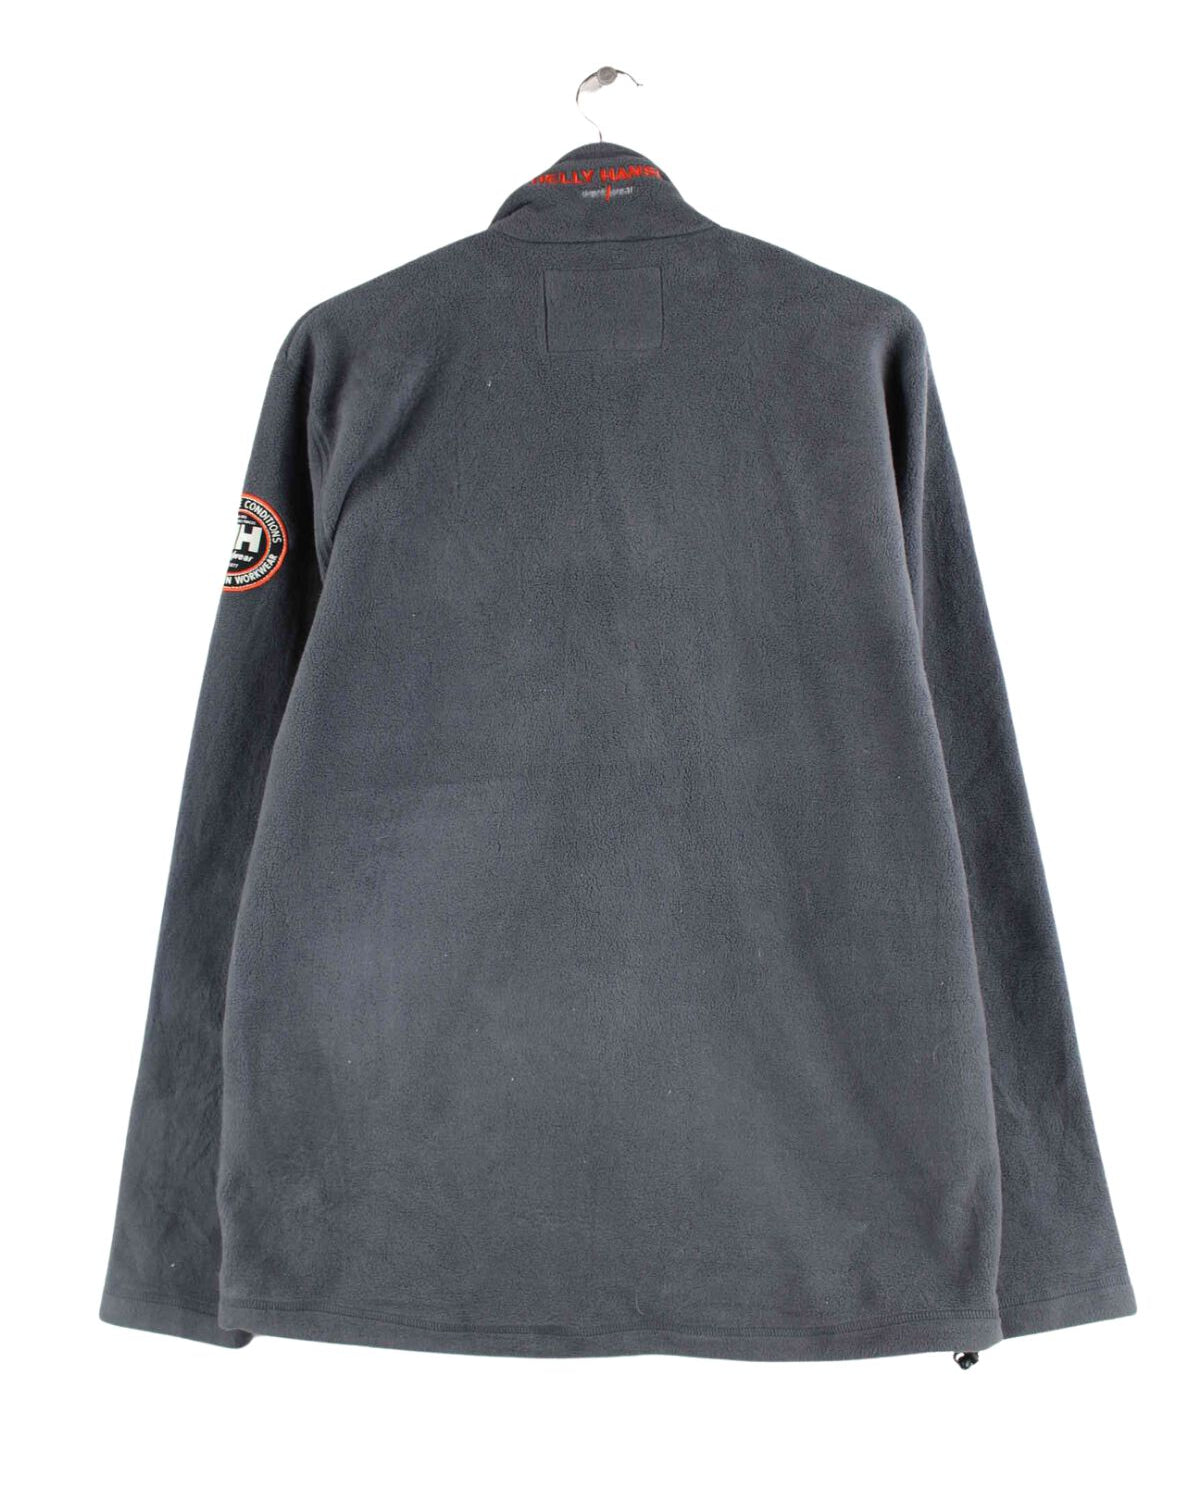 Helly Hansen Workwear Fleece Jacke Grau L (back image)